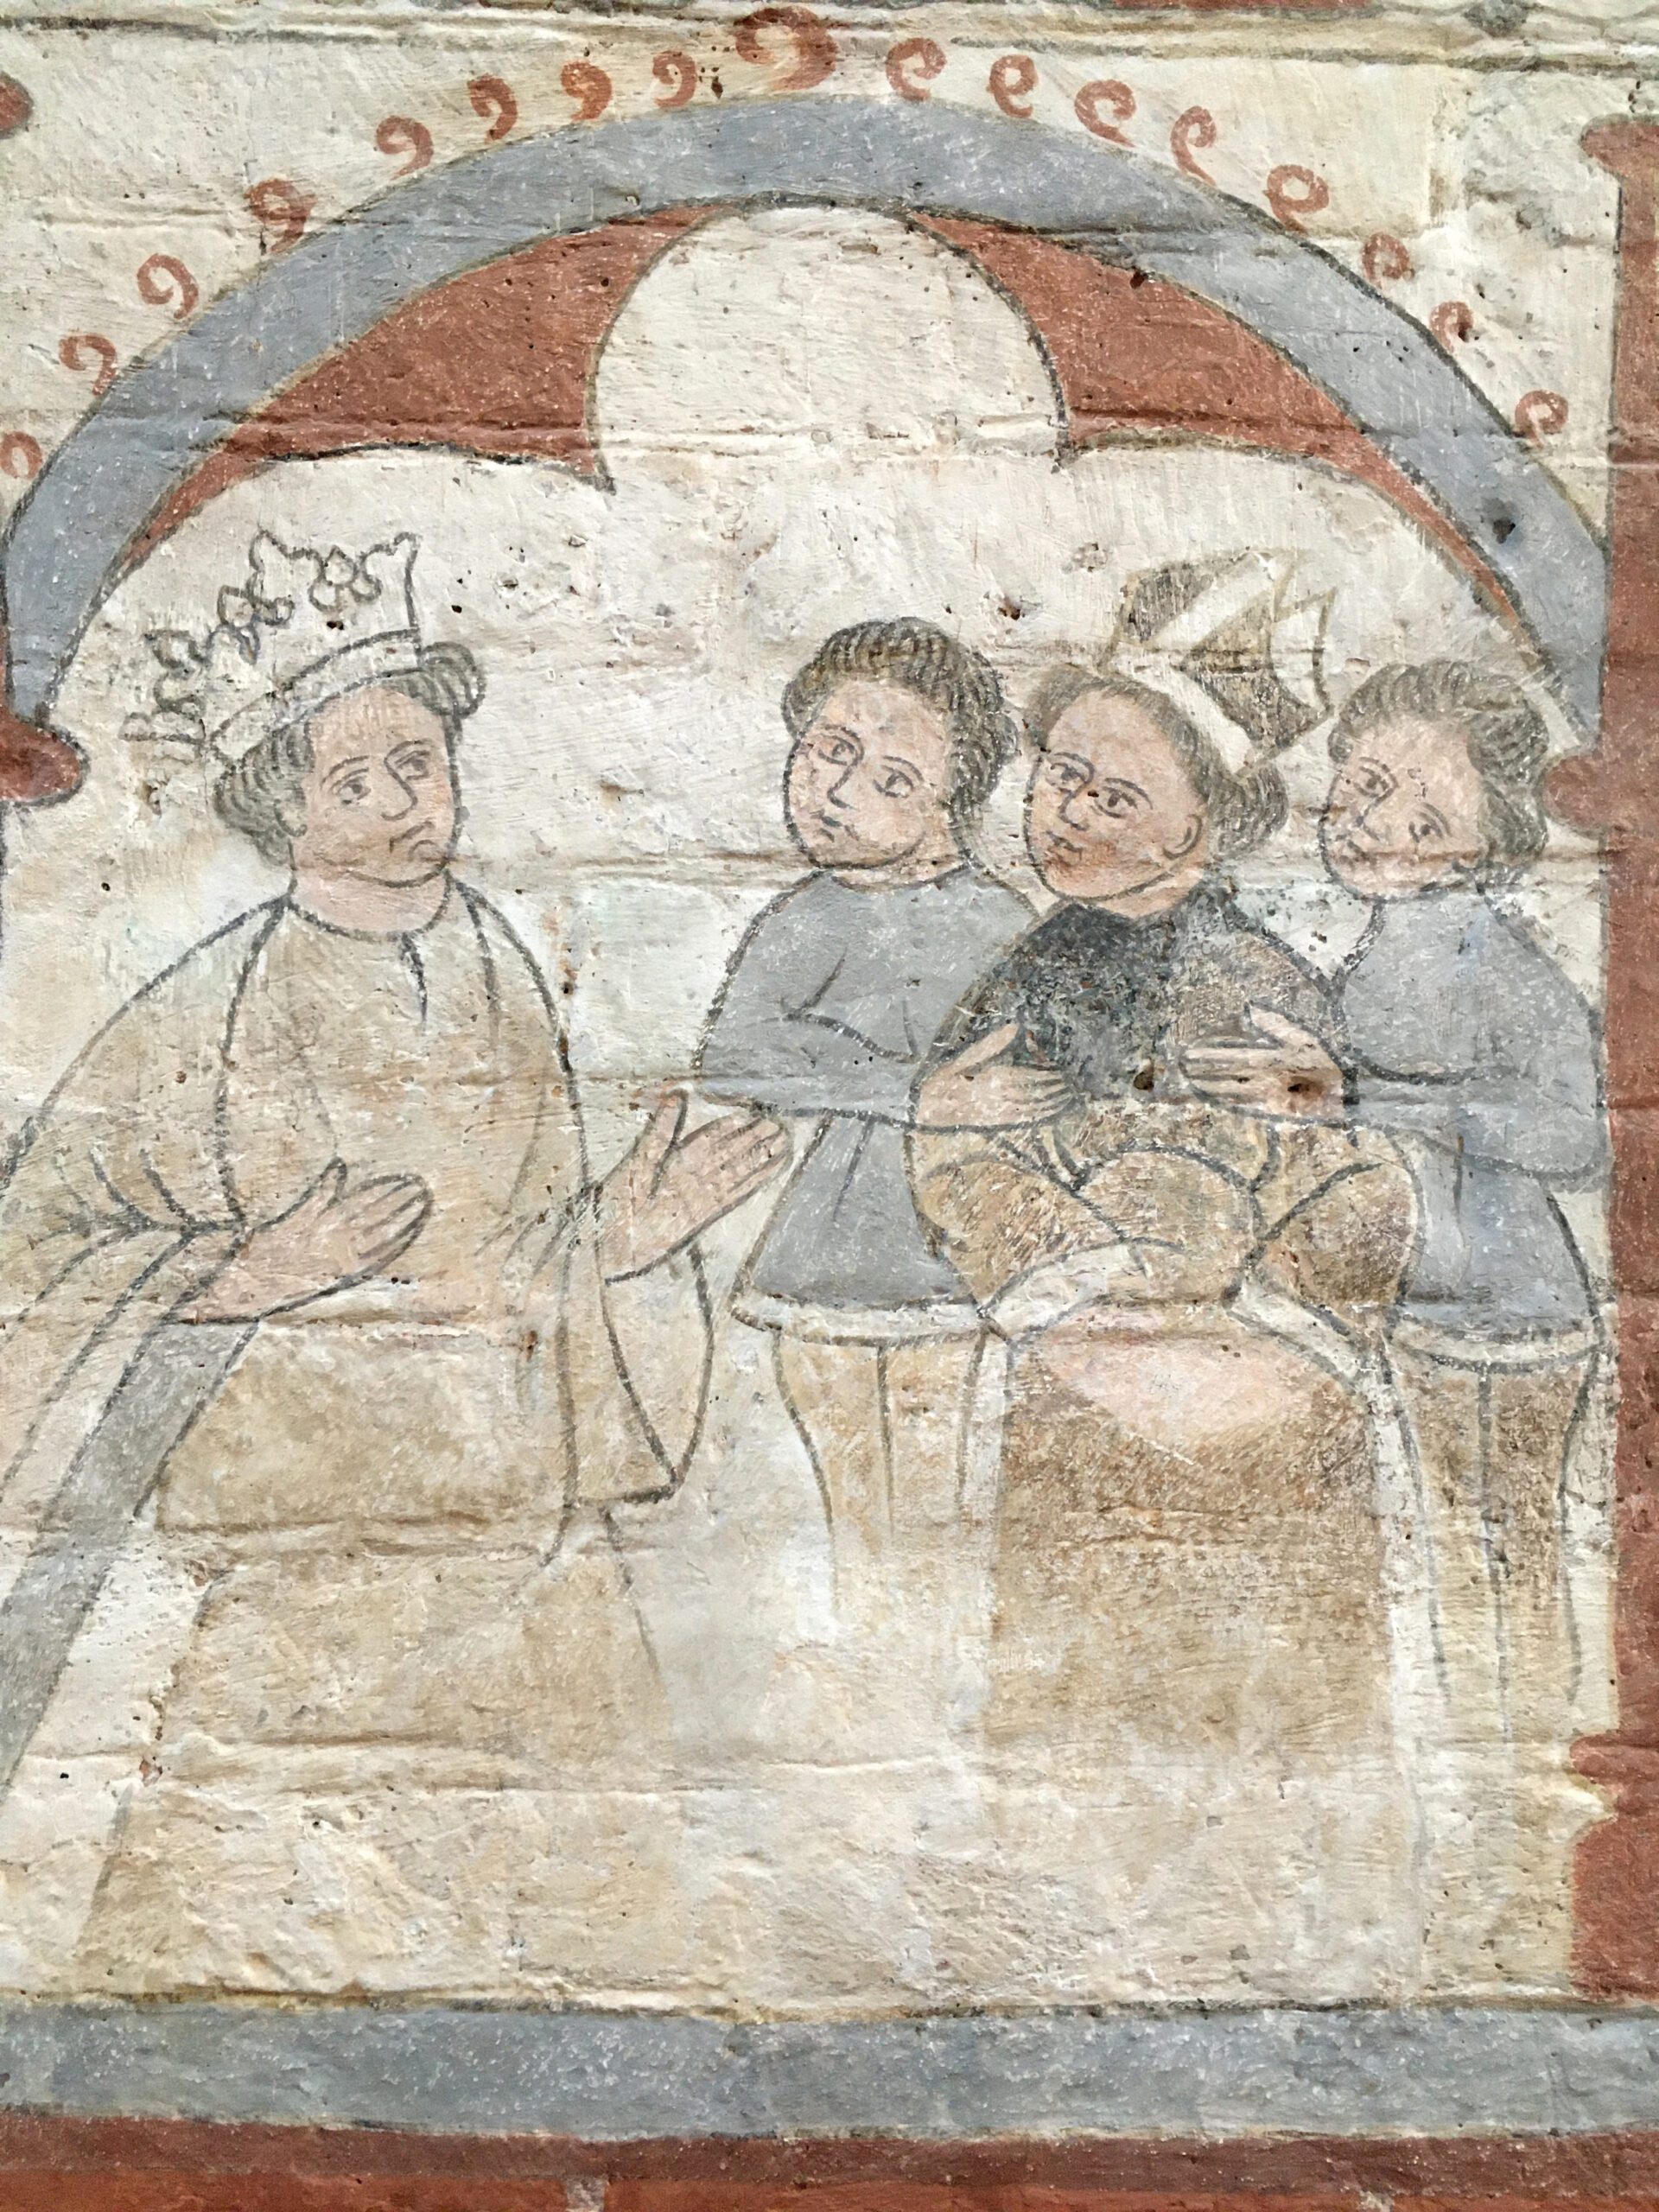 Medeltida kyrkomålning där en kung pratar med en biskop, samt två andra män. Kungen har guldfärgade kläder och krona på huvudet. Biskopen har bruna kläder och mitra på huvudet.